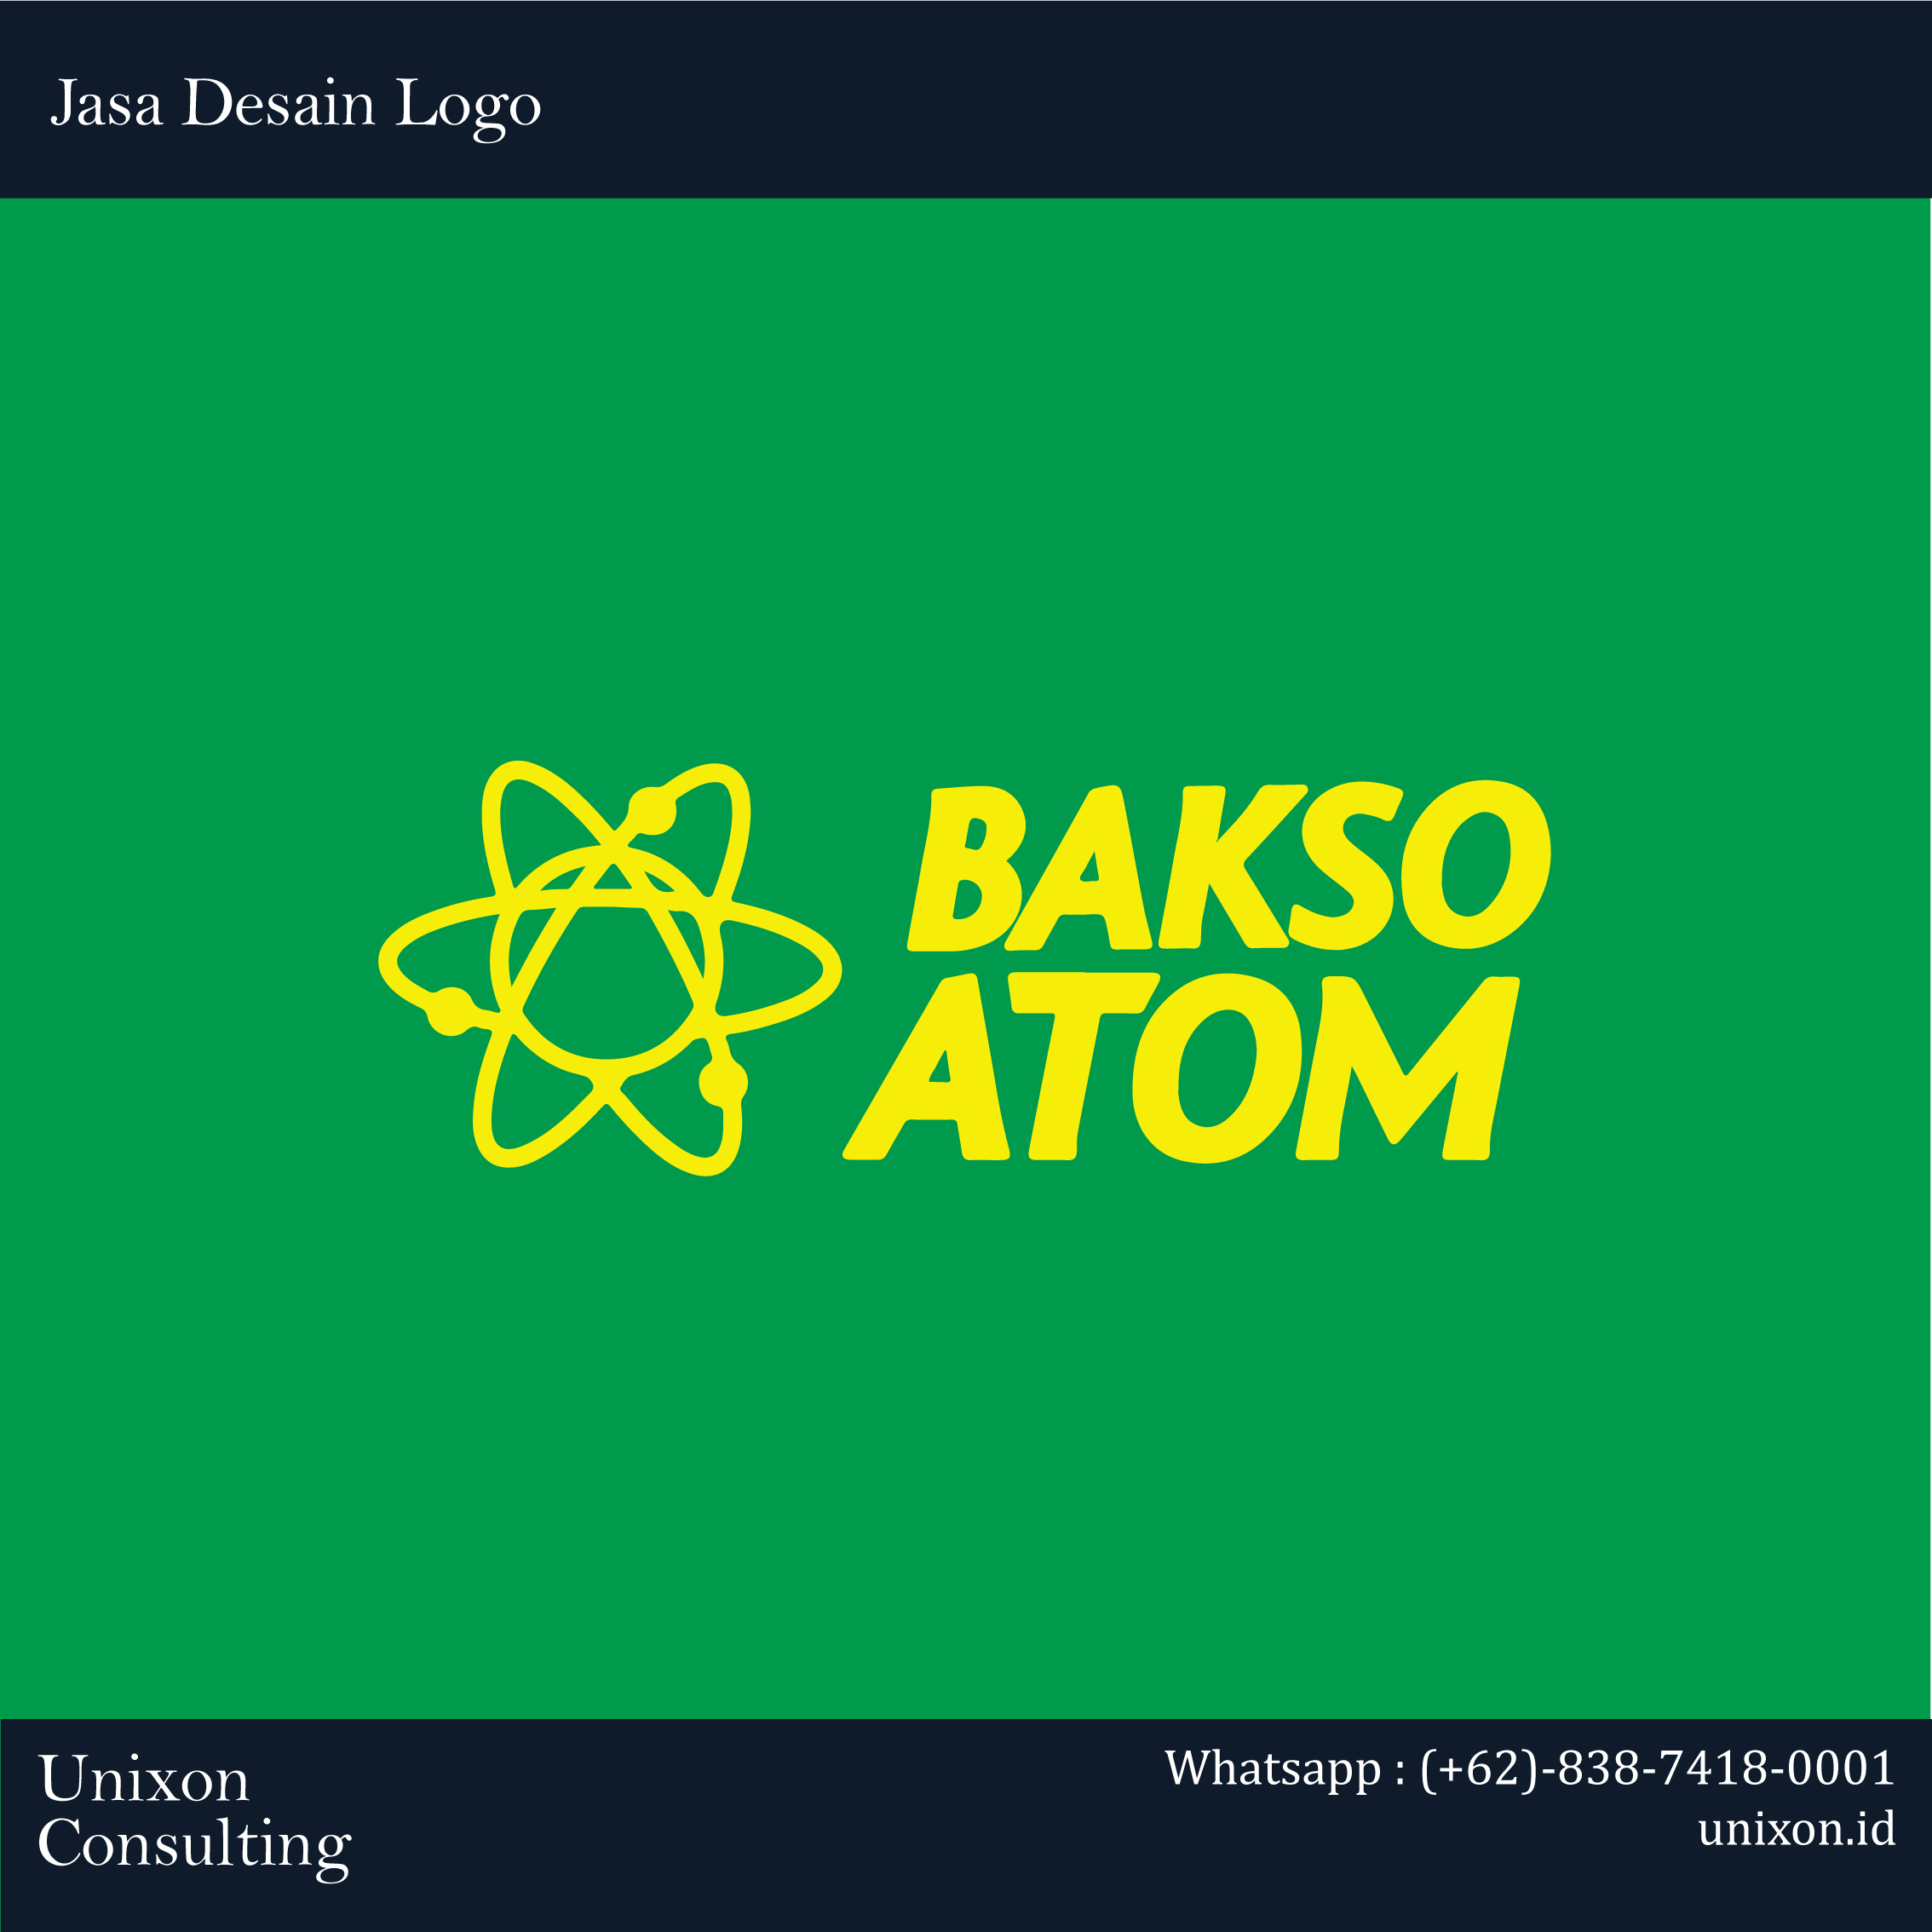 jasa design logo restoran bakso atom di jakarta bintaro tangerang karawaci bogor bandung